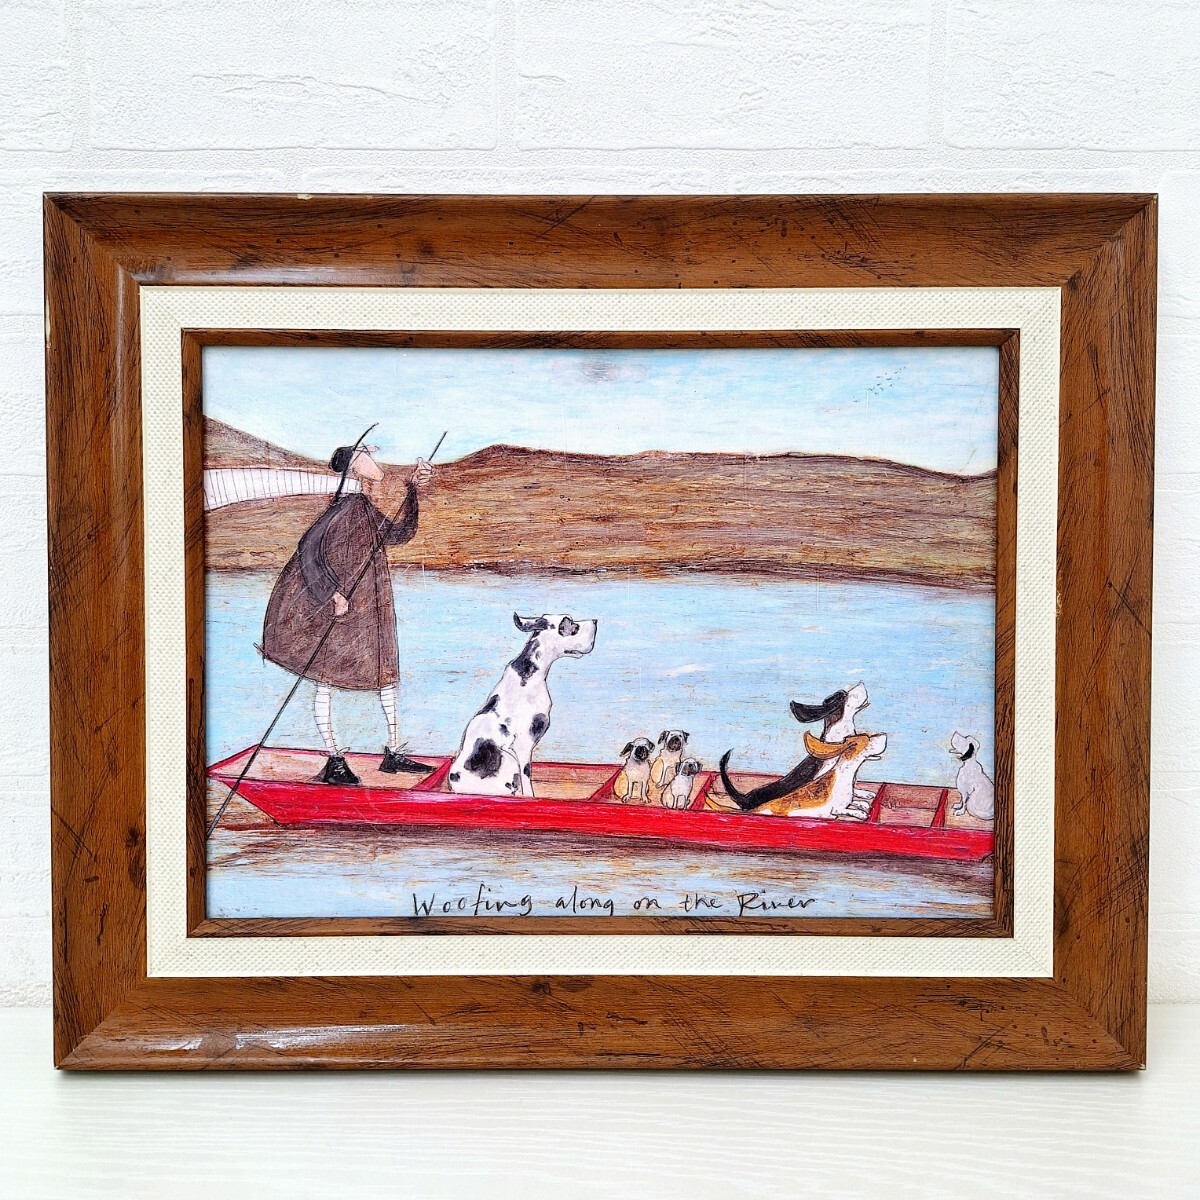 لوحة فنية من Samtoft Wan River Cruise إطار فني على شكل نهر الكلب فنان بريطاني معلق على الحائط لوحة زيتية داخلية فن فني WK, أثاث, الداخلية, الملحقات الداخلية, آحرون